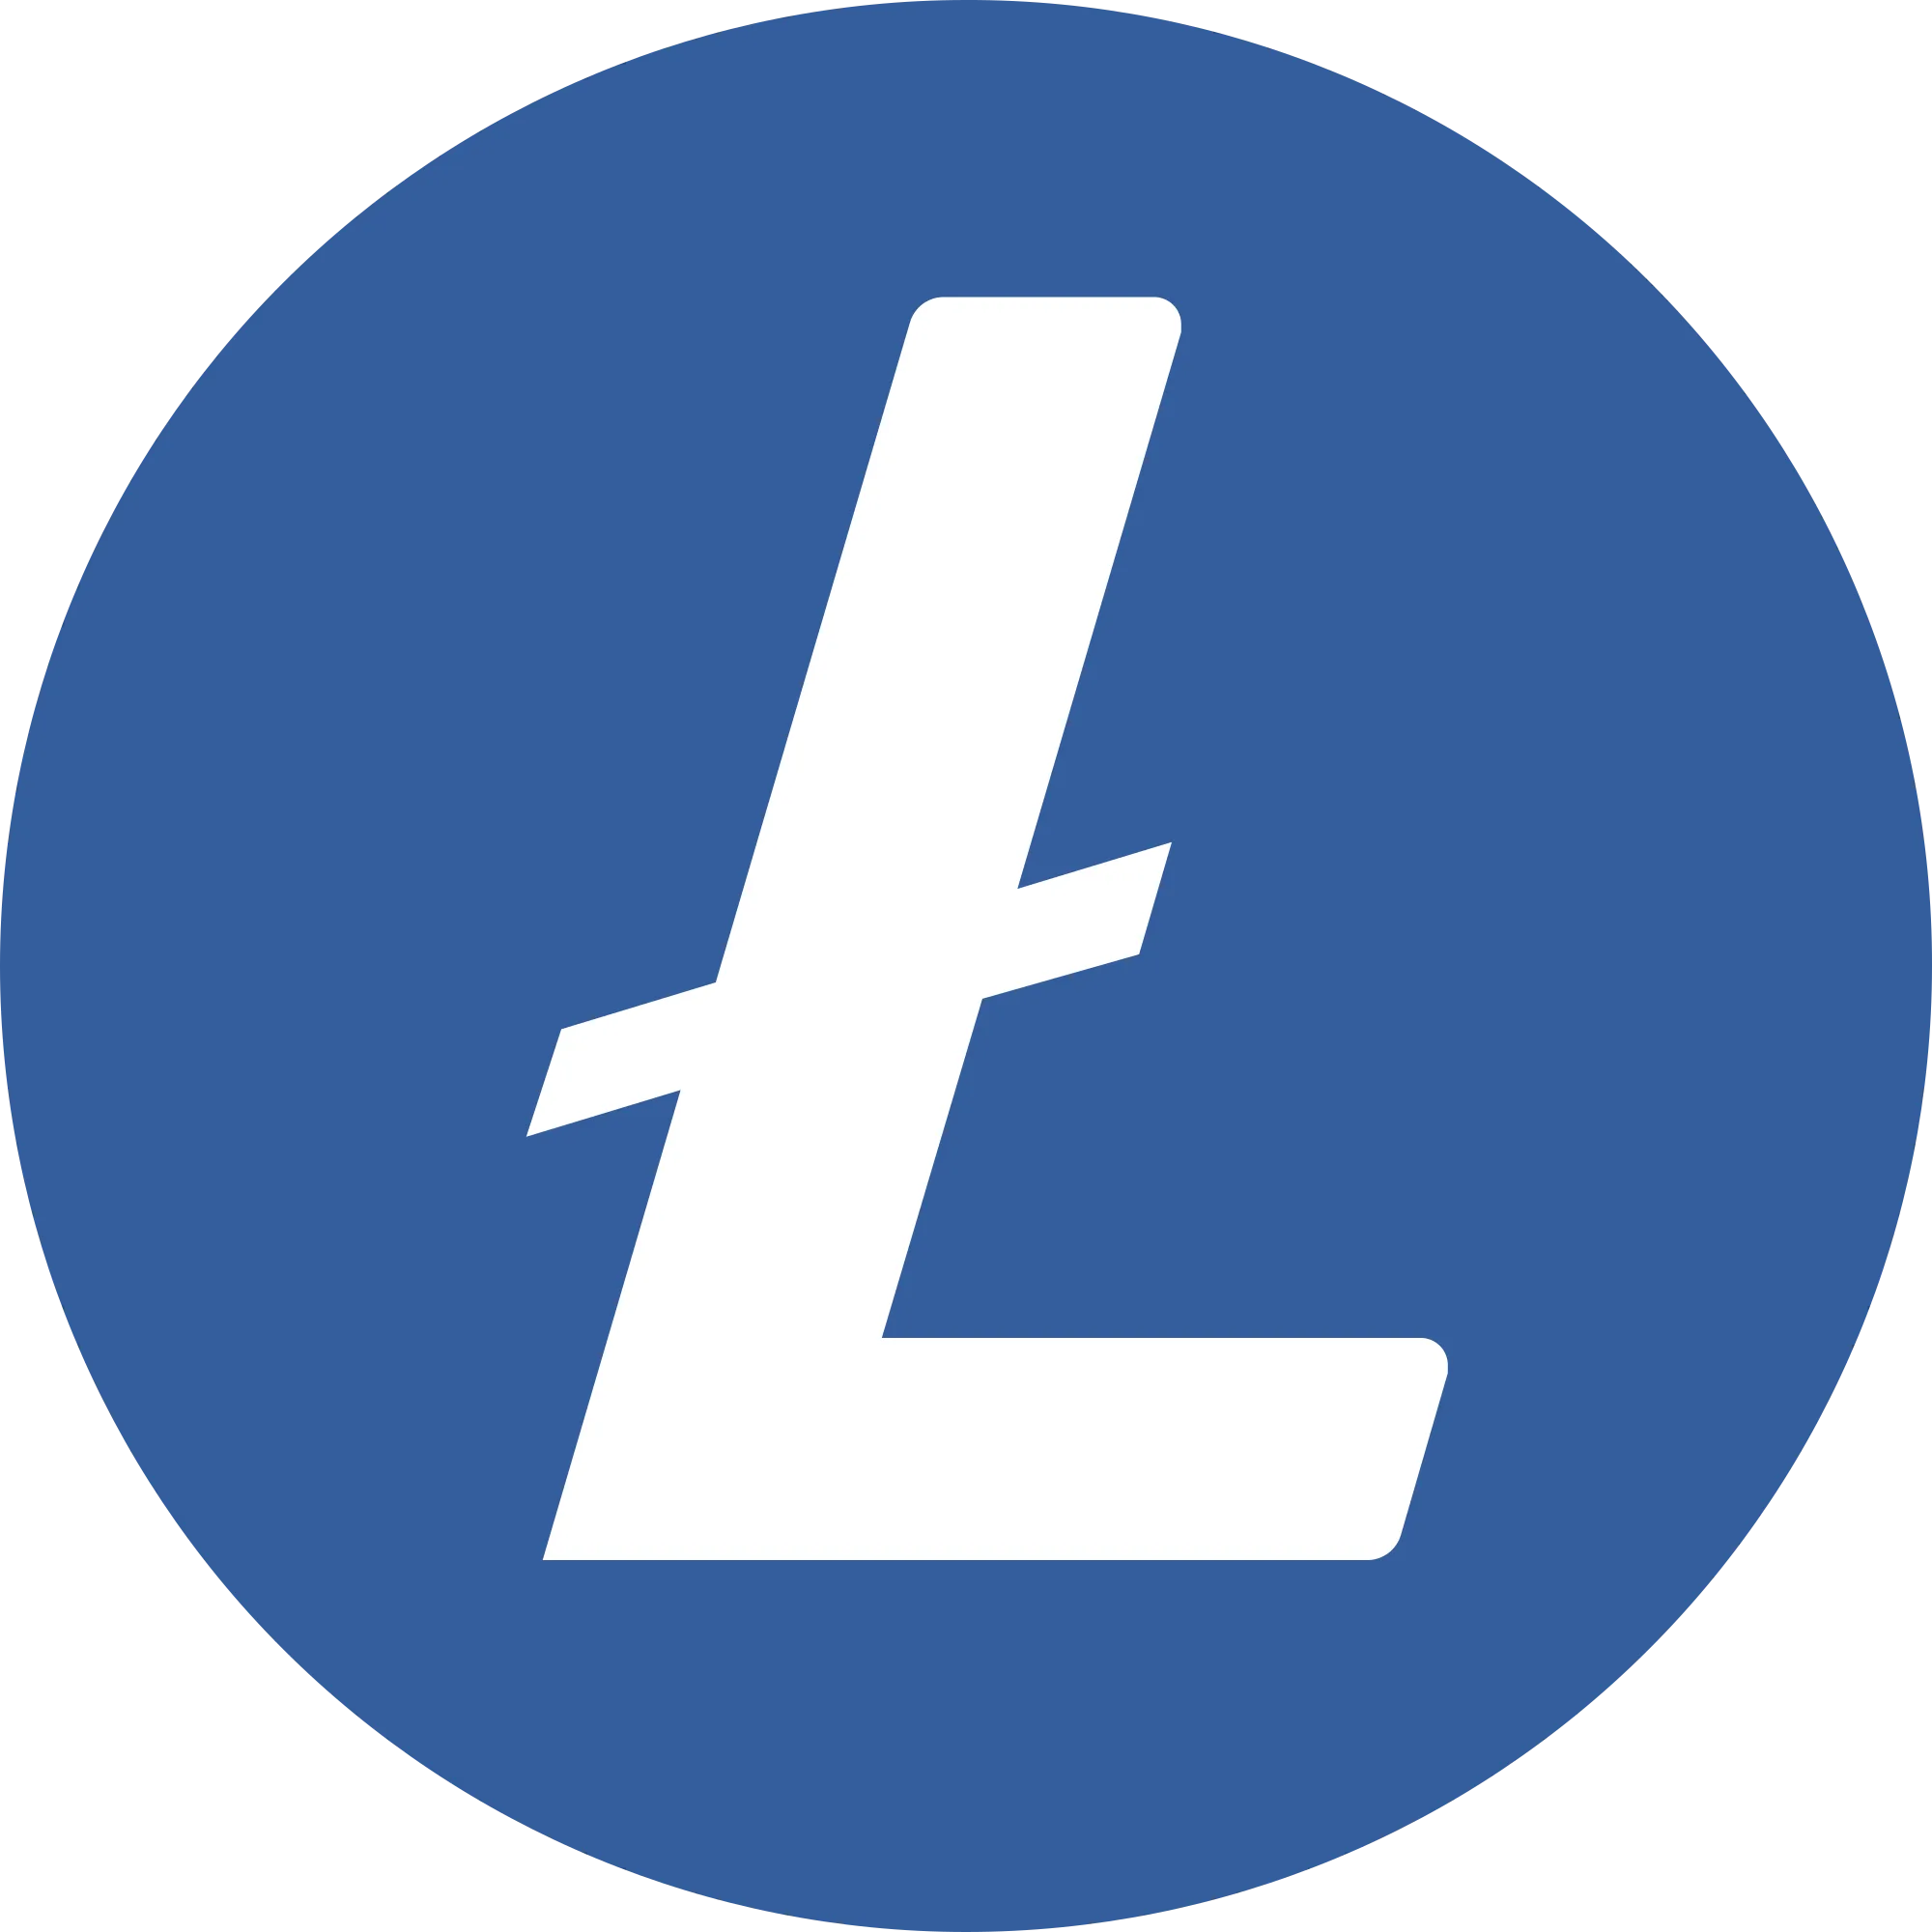 Litecoin logo in png format